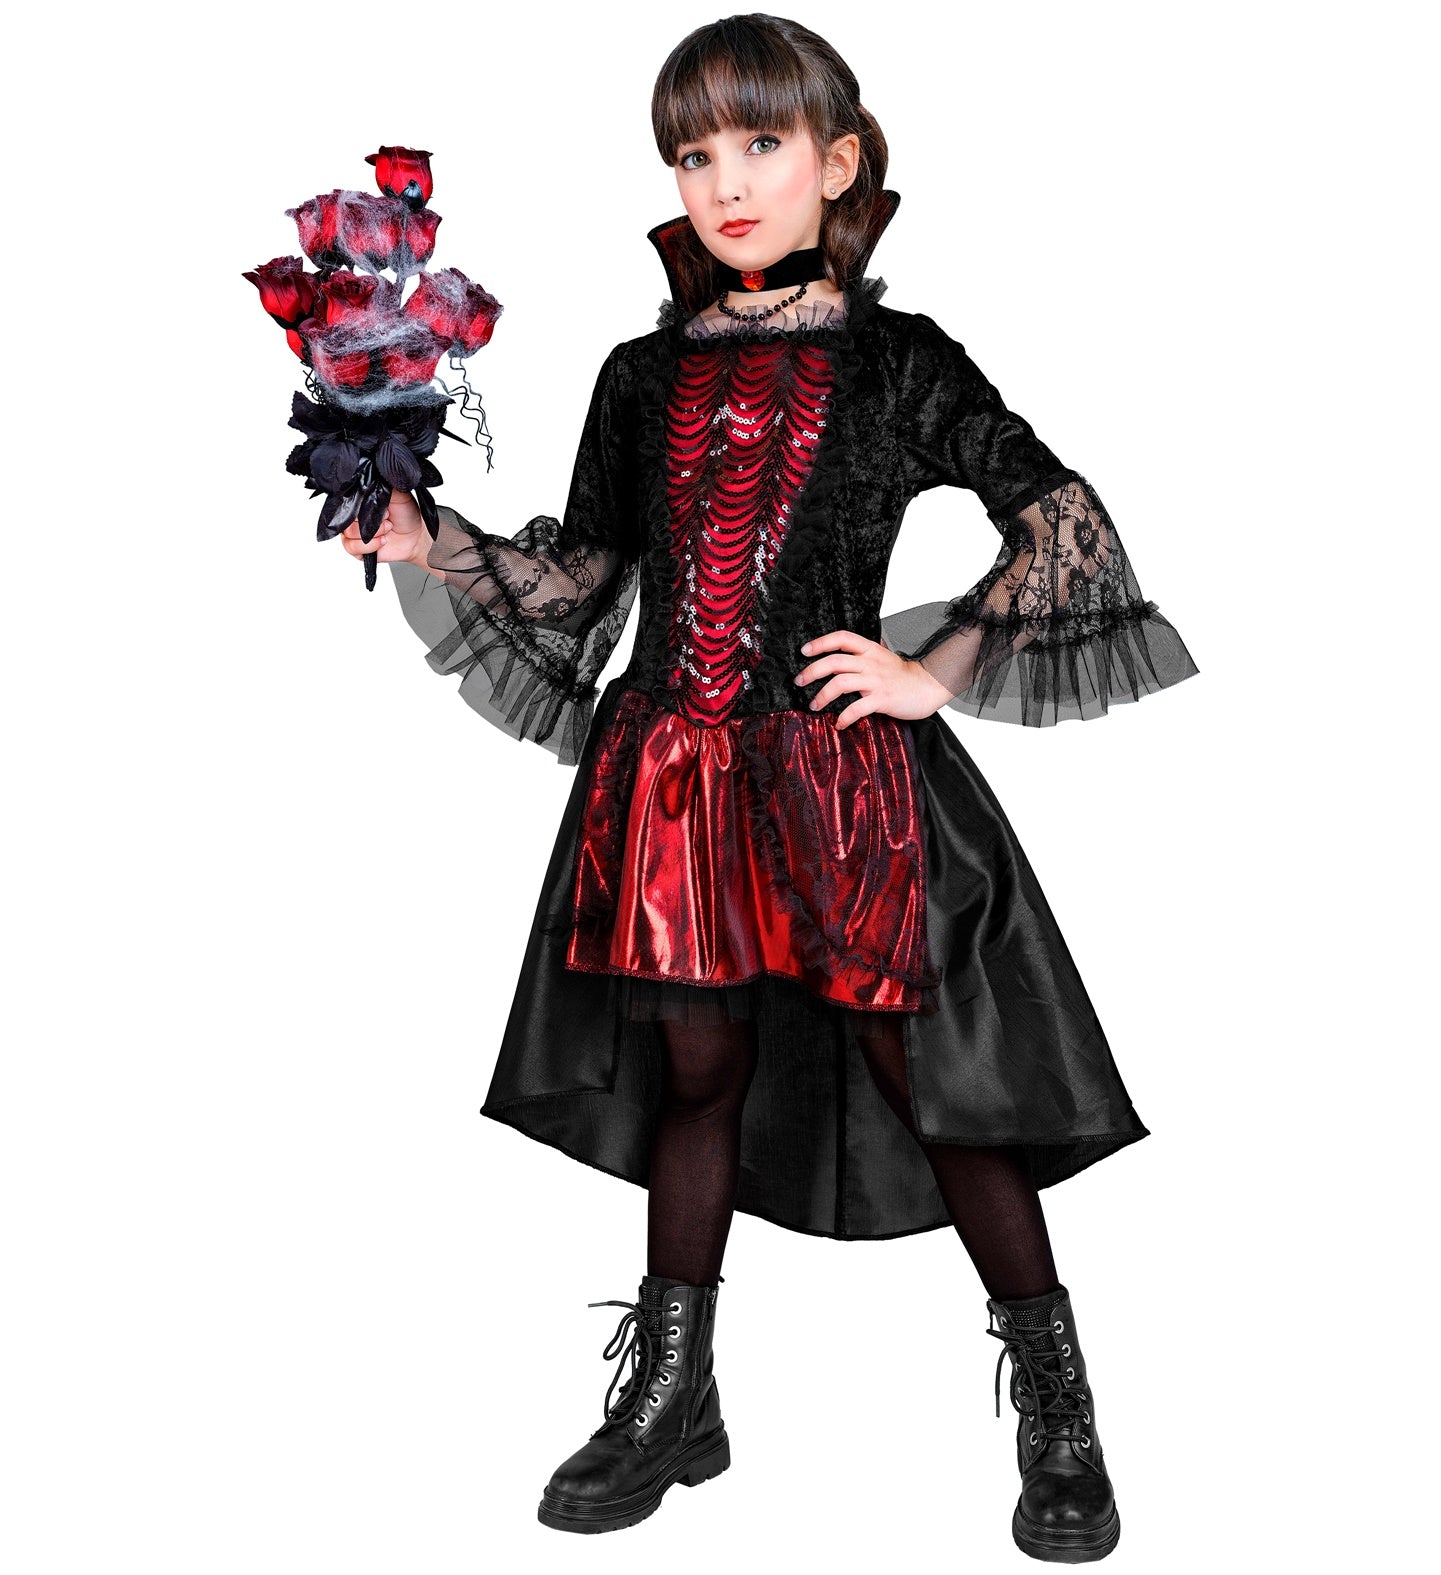 Blood Vampiress Costume Child's